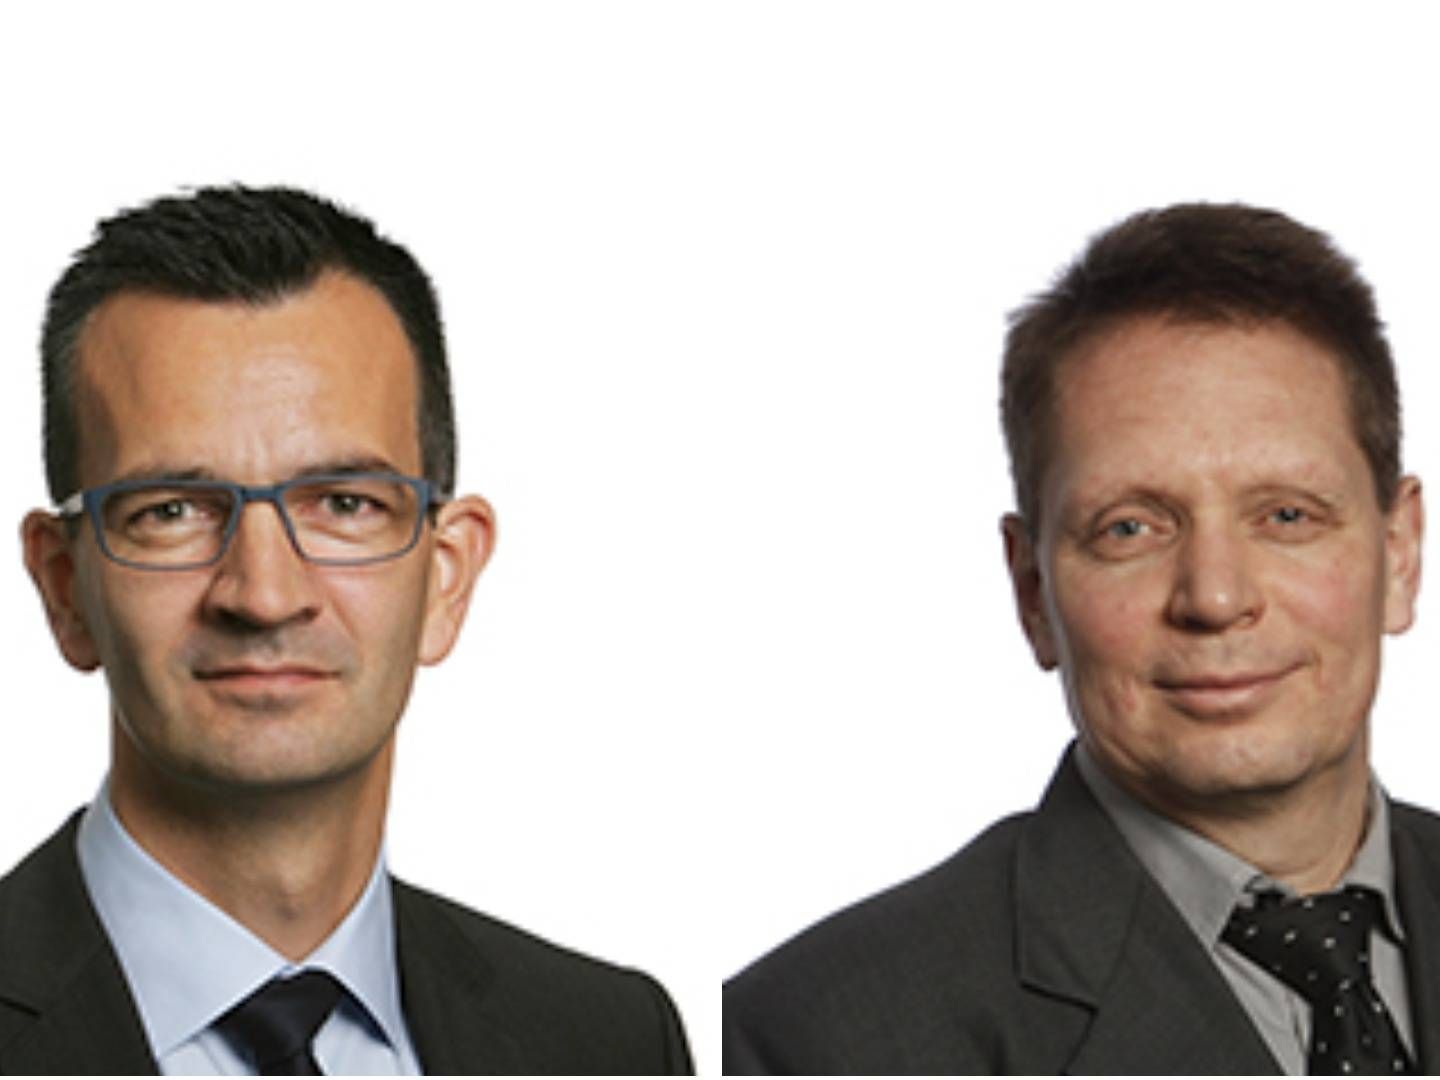 Mikkel Røgild is chief investment officier at Jyske Capital, and Henning Mortense is the head of Jyske Capital. | Photo: PR/Jyske Bank